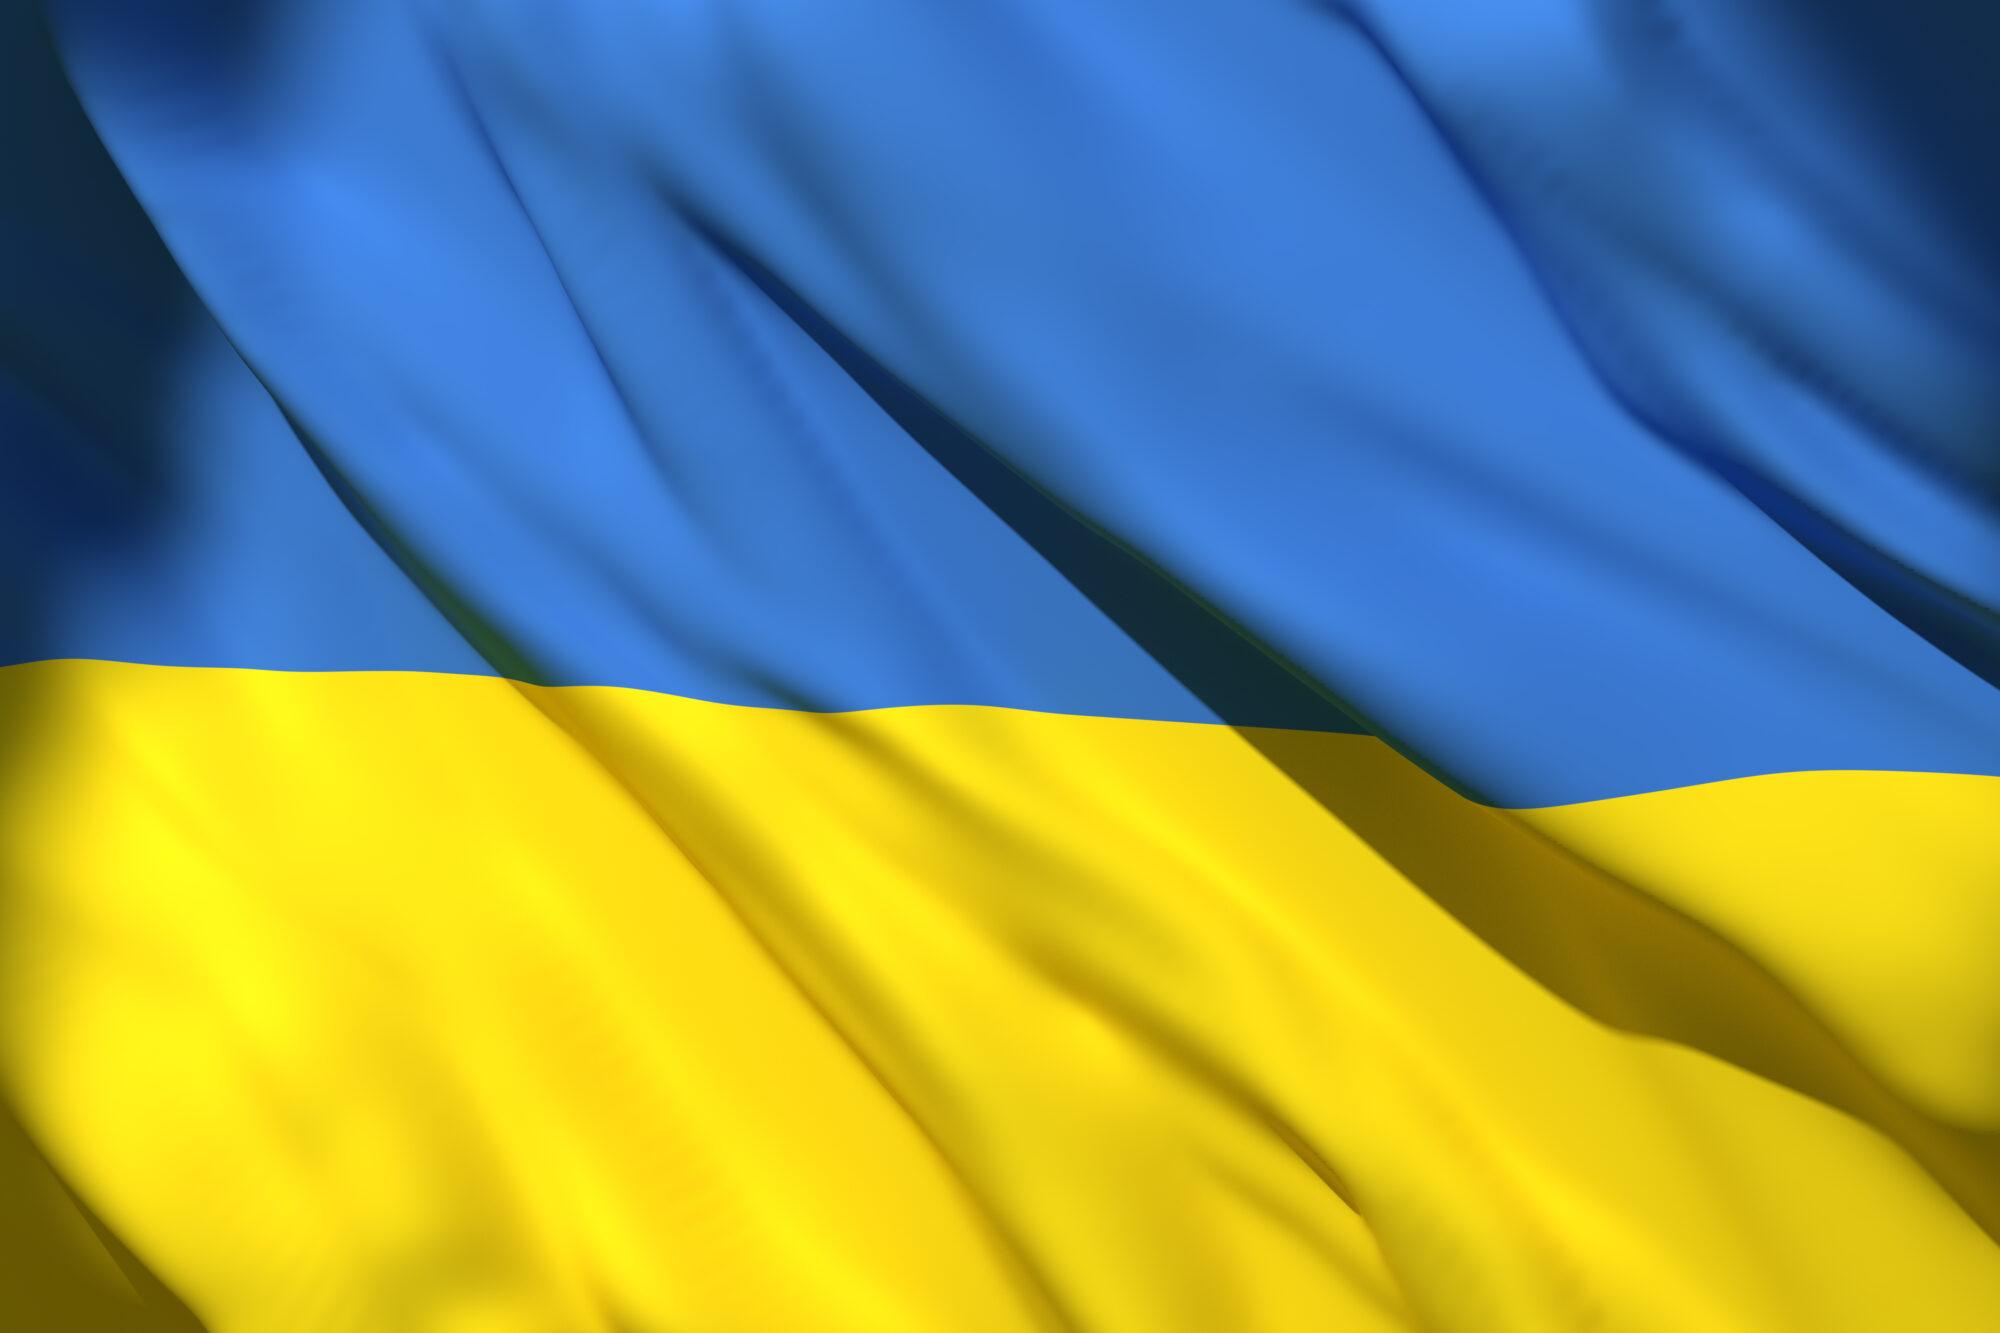 Le Conseil communal de Seraing adopte une motion pour soutenir le peuple ukrainien